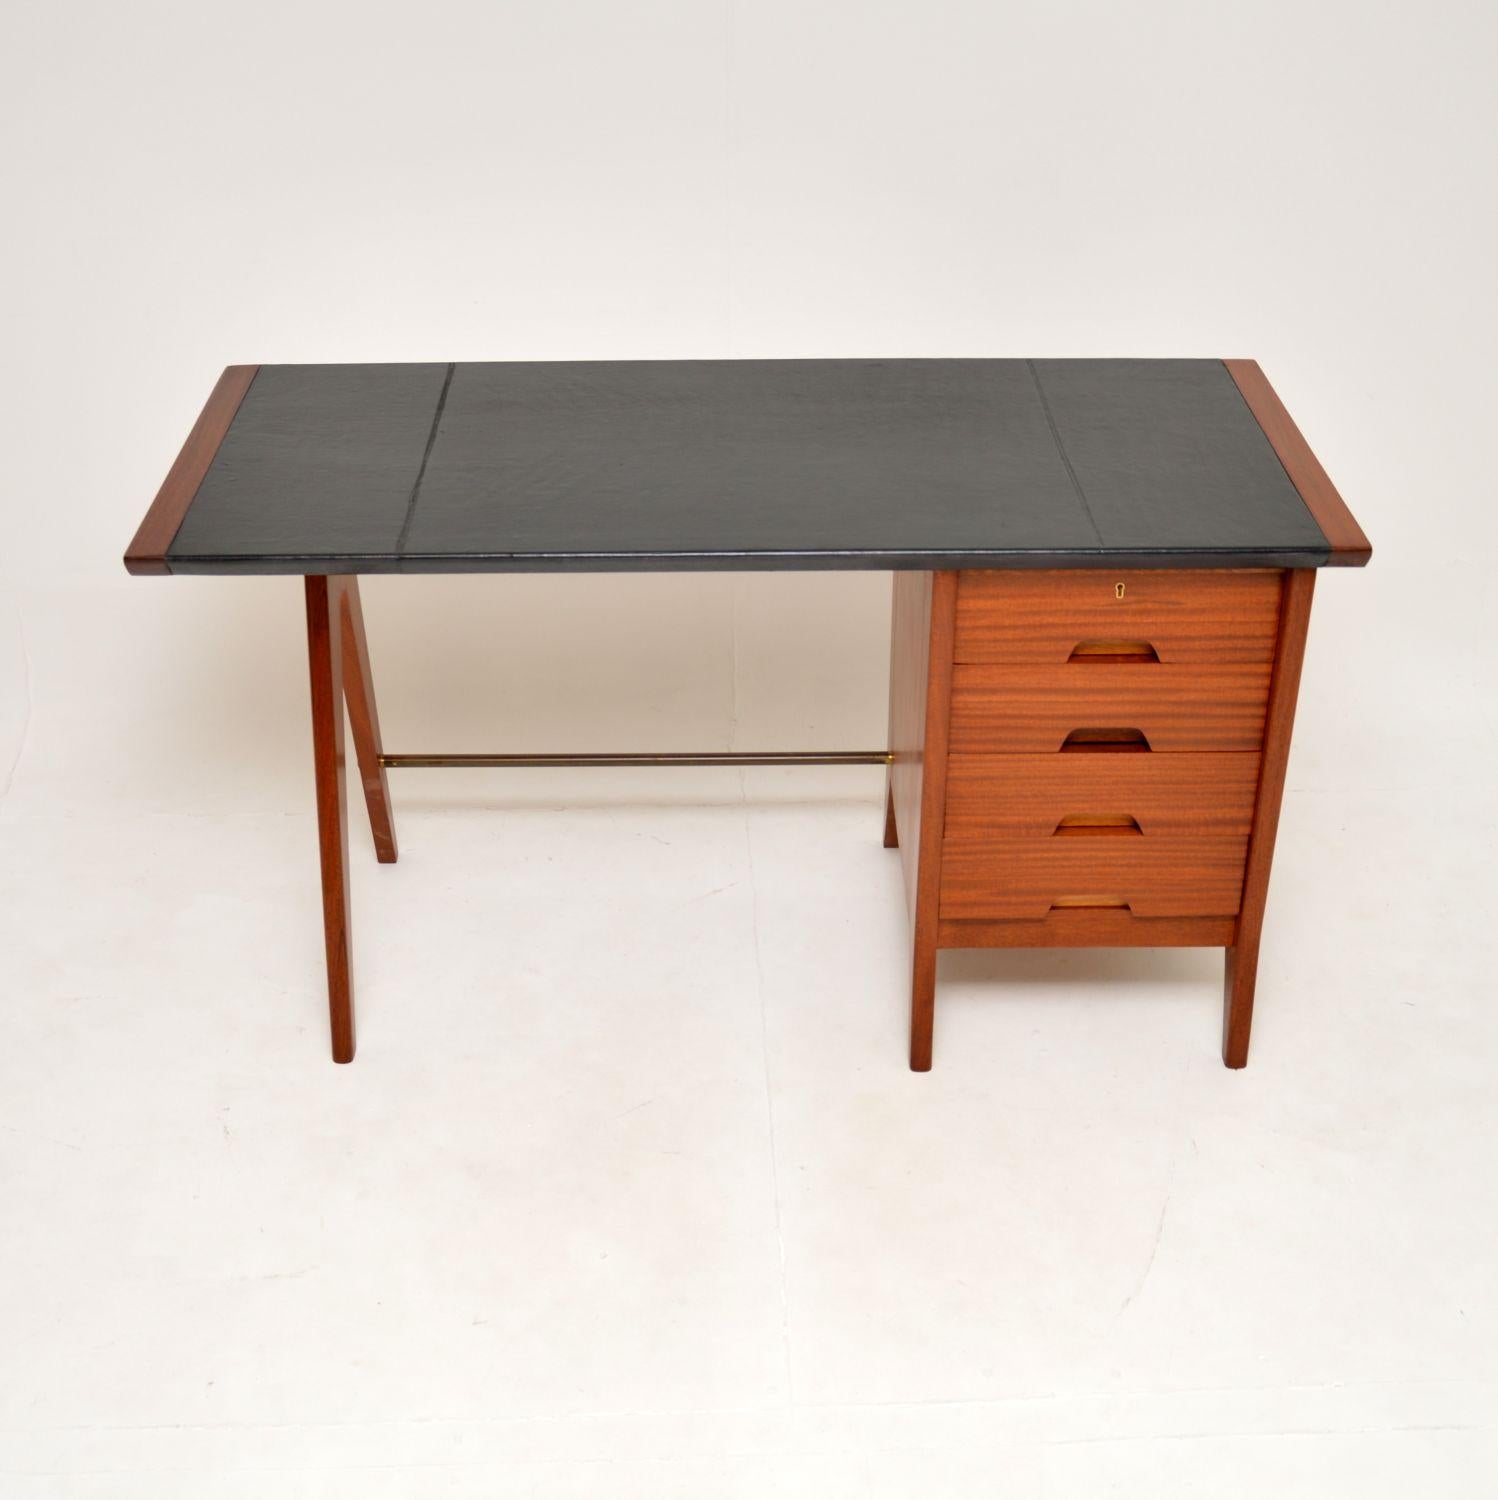 Ein atemberaubender und sehr seltener Vintage-Schreibtisch mit Lederplatte von Beresford und Hicks. Sie wurde in England hergestellt und stammt aus den 1950-60er Jahren. Beresford und Hicks waren Hersteller von Möbeln höchster Qualität, die nur in